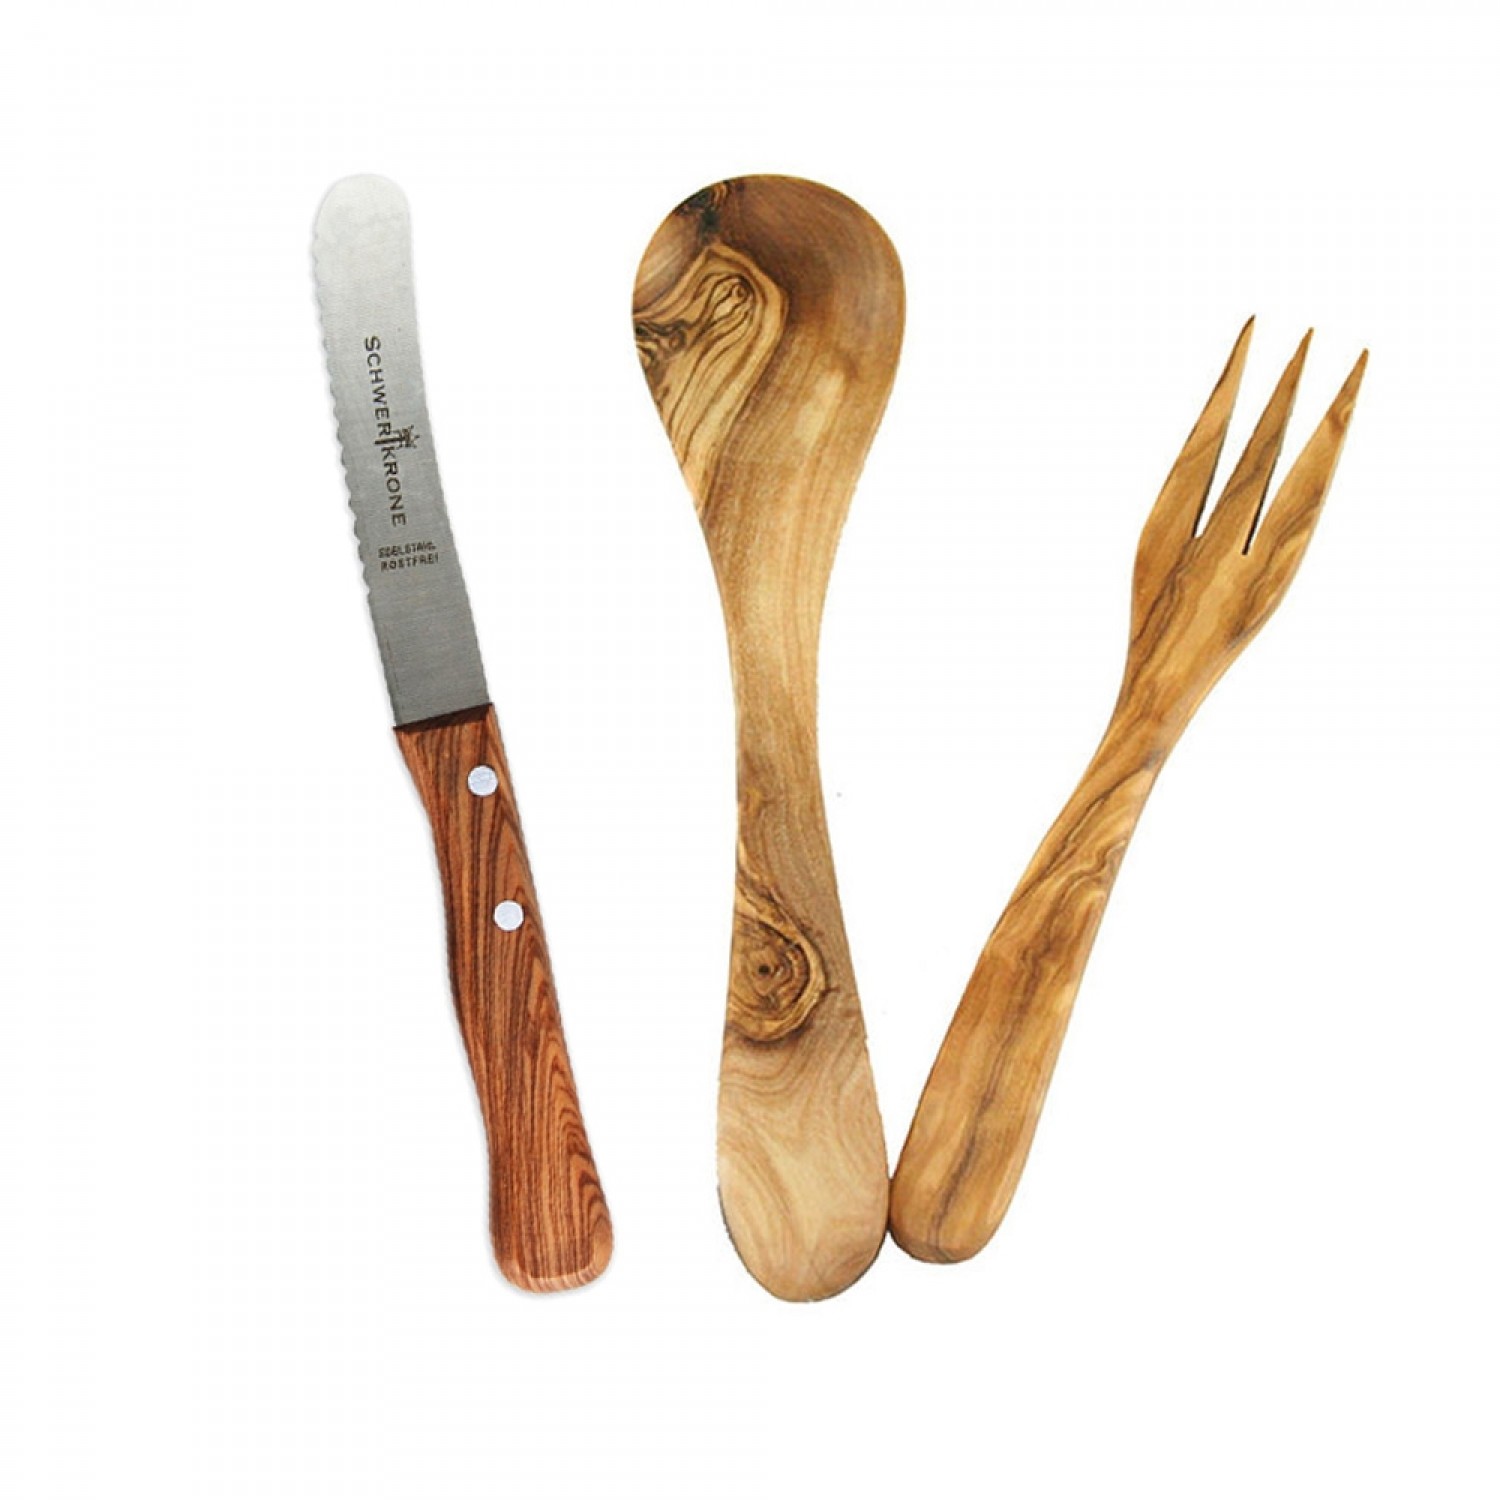 Olive Wood Breakfast Cutlery incl. Schwertkrone Knife | D.O.M.